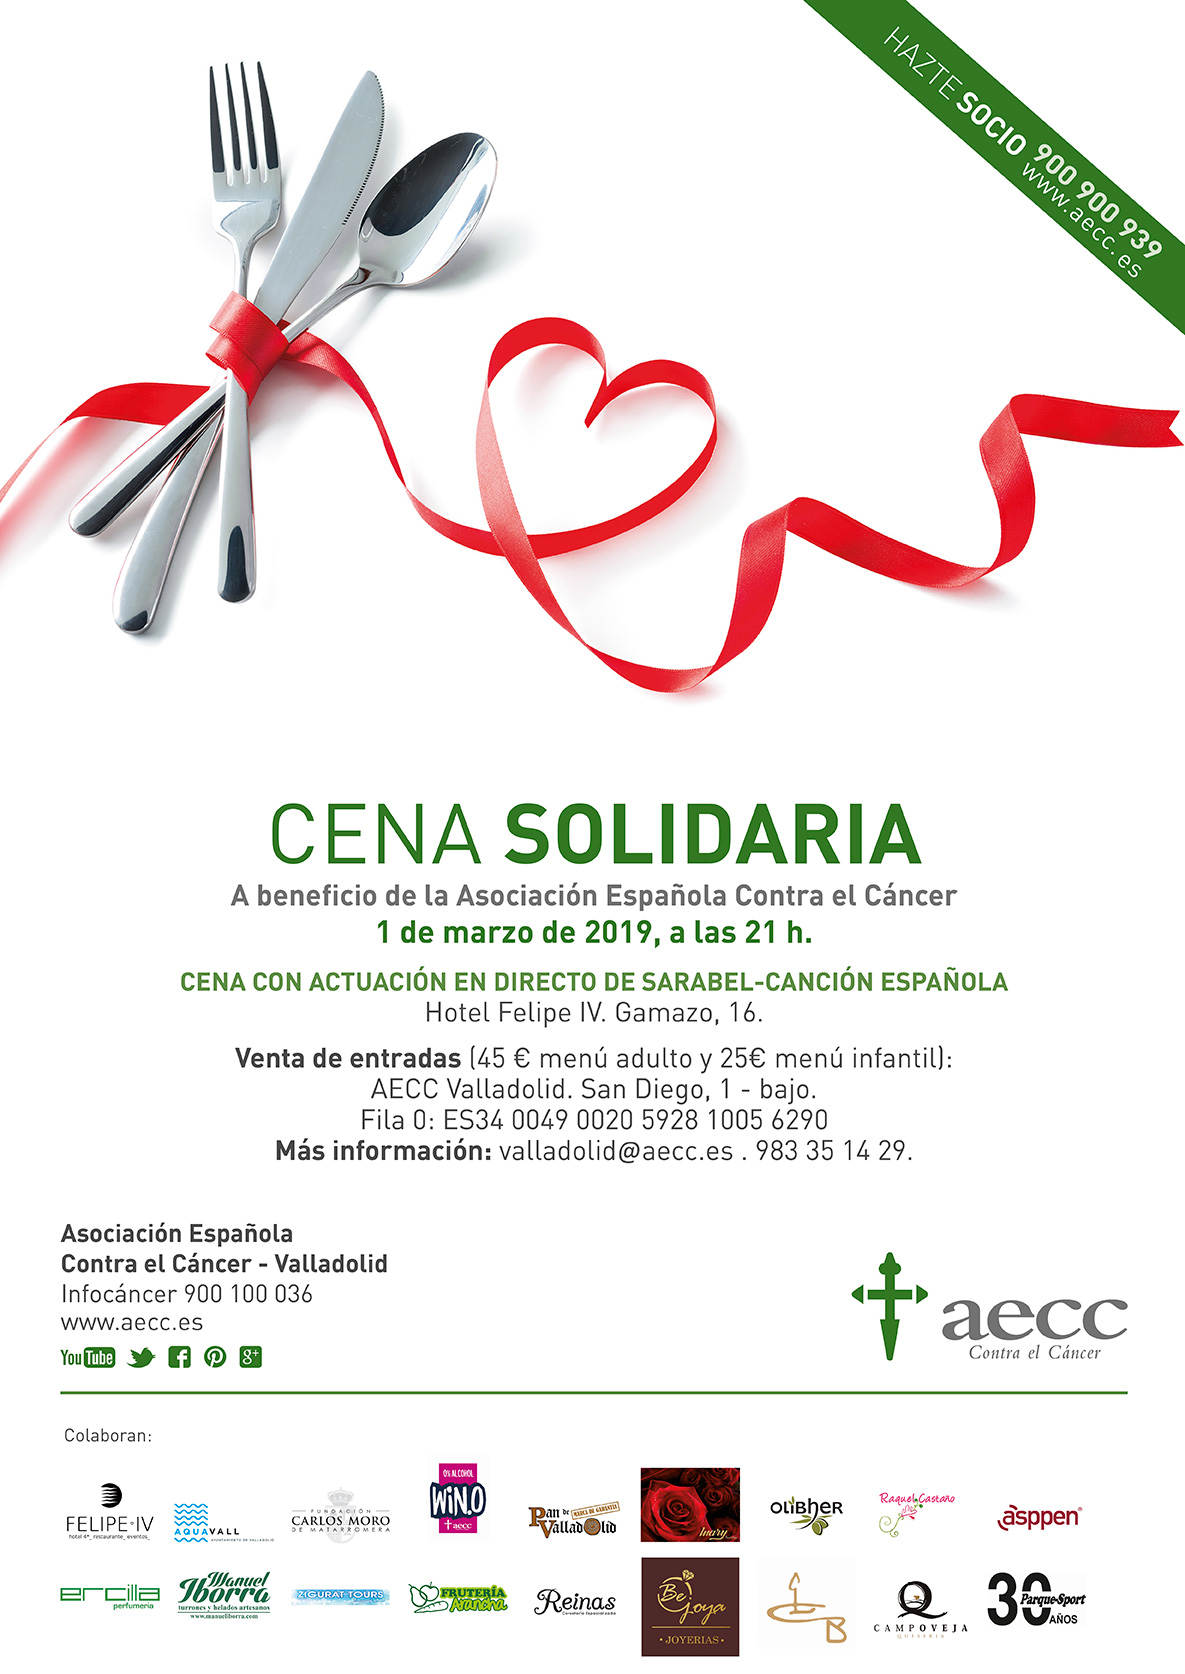 Cena Solidaria 2019 de la Asociación Española Contra el Cáncer